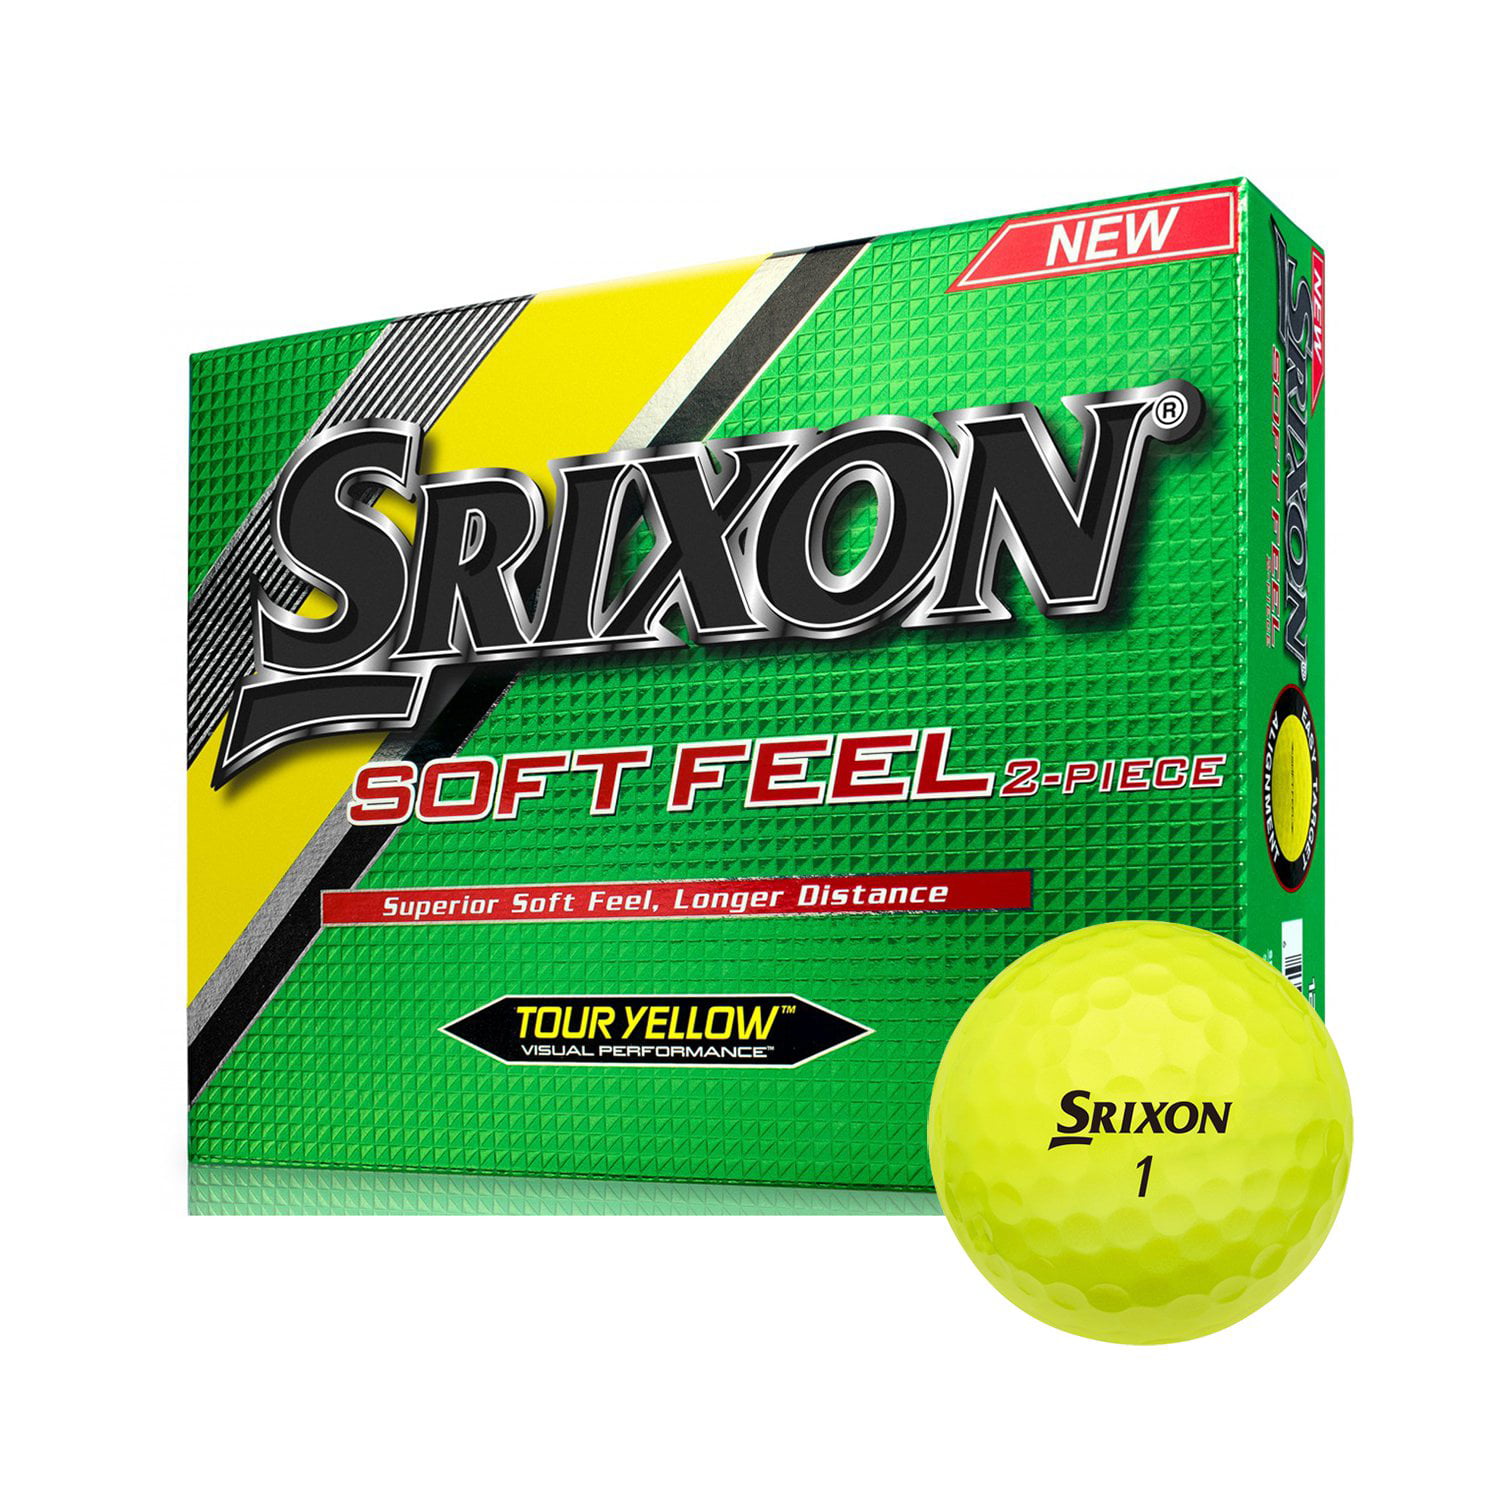 Srixon Superior Soft Feel Golf Balls, Yellow, 12 Pack - Walmart.com